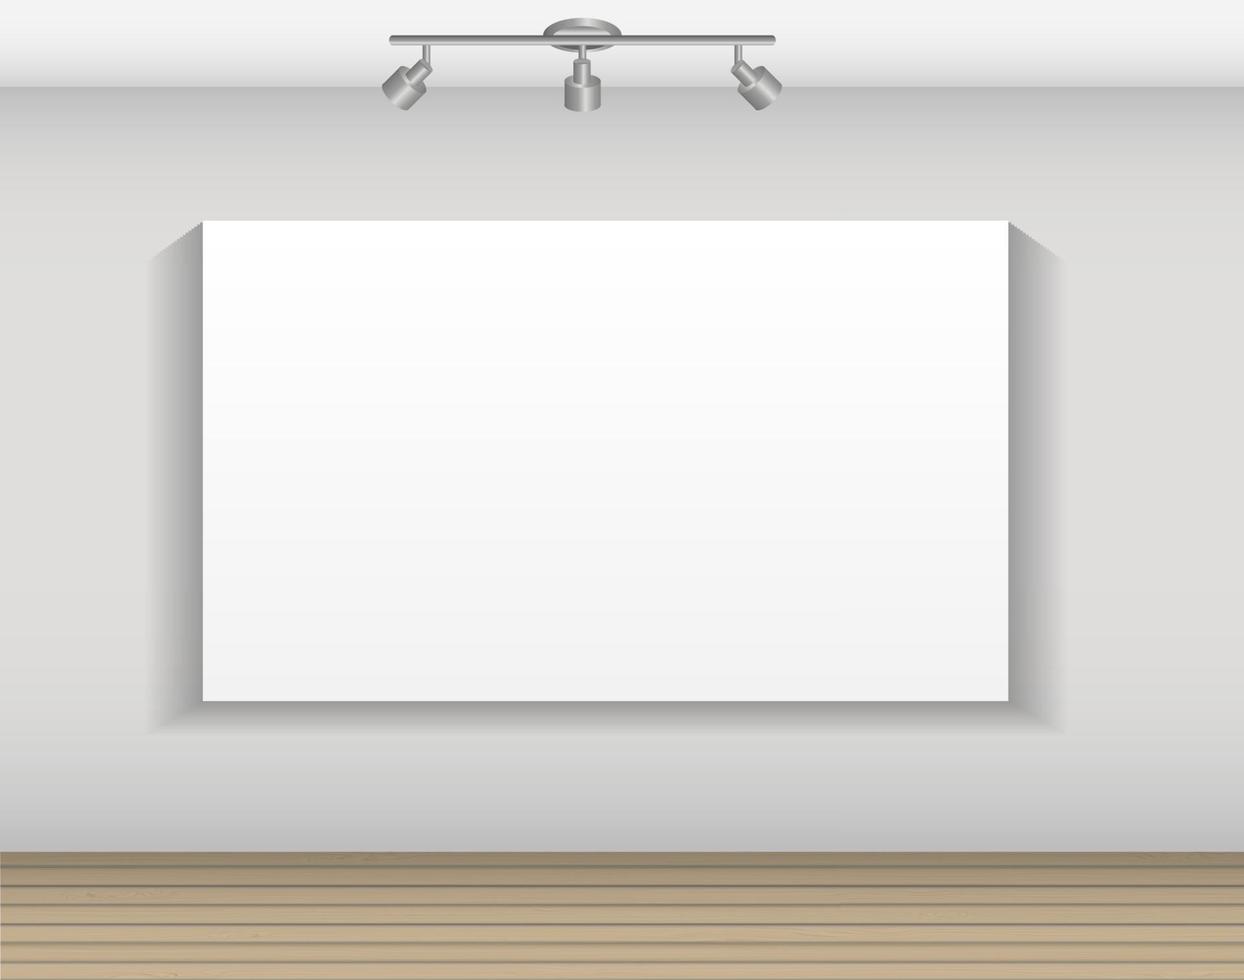 frame op de muur voor uw tekst en afbeeldingen, vectorillustratie vector